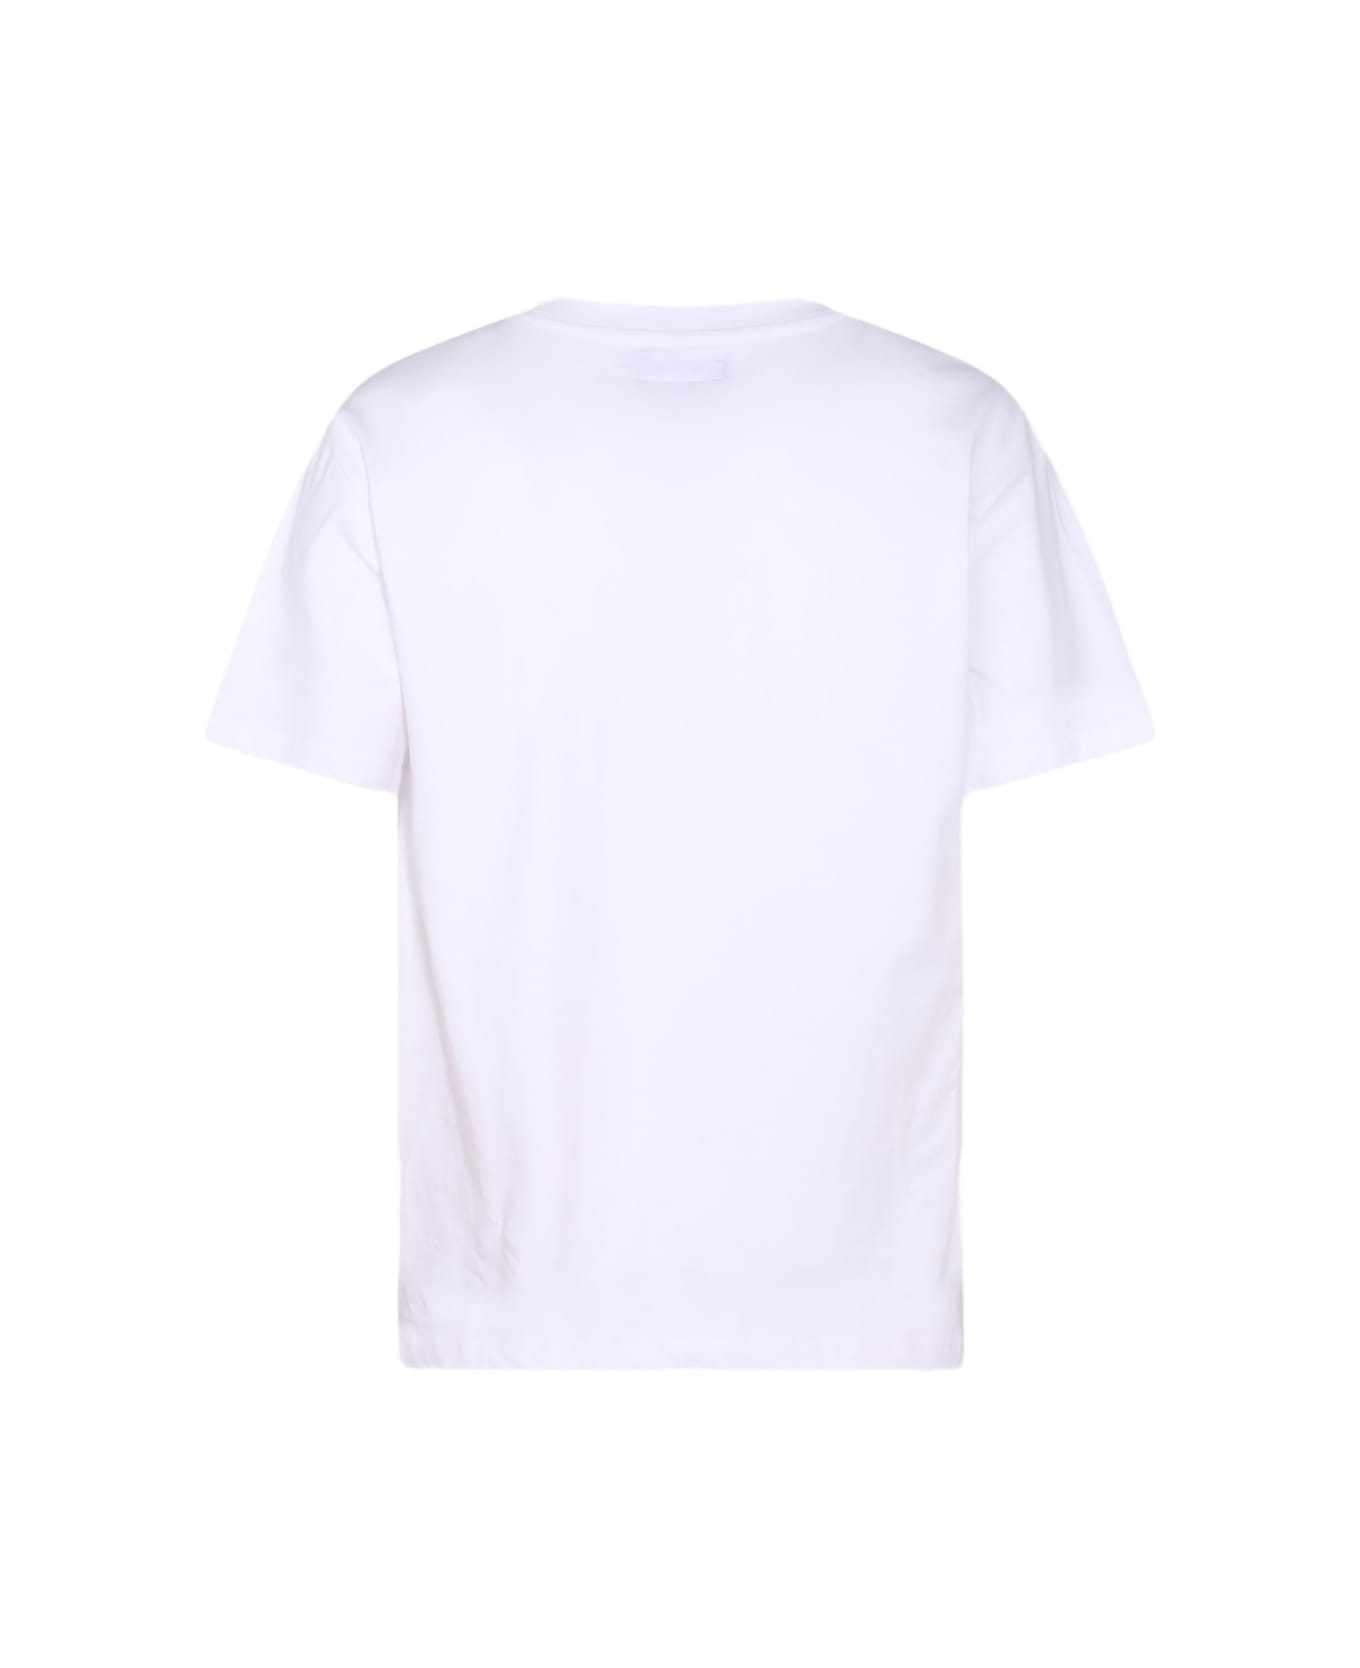 Market White Cotton T-shirt シャツ